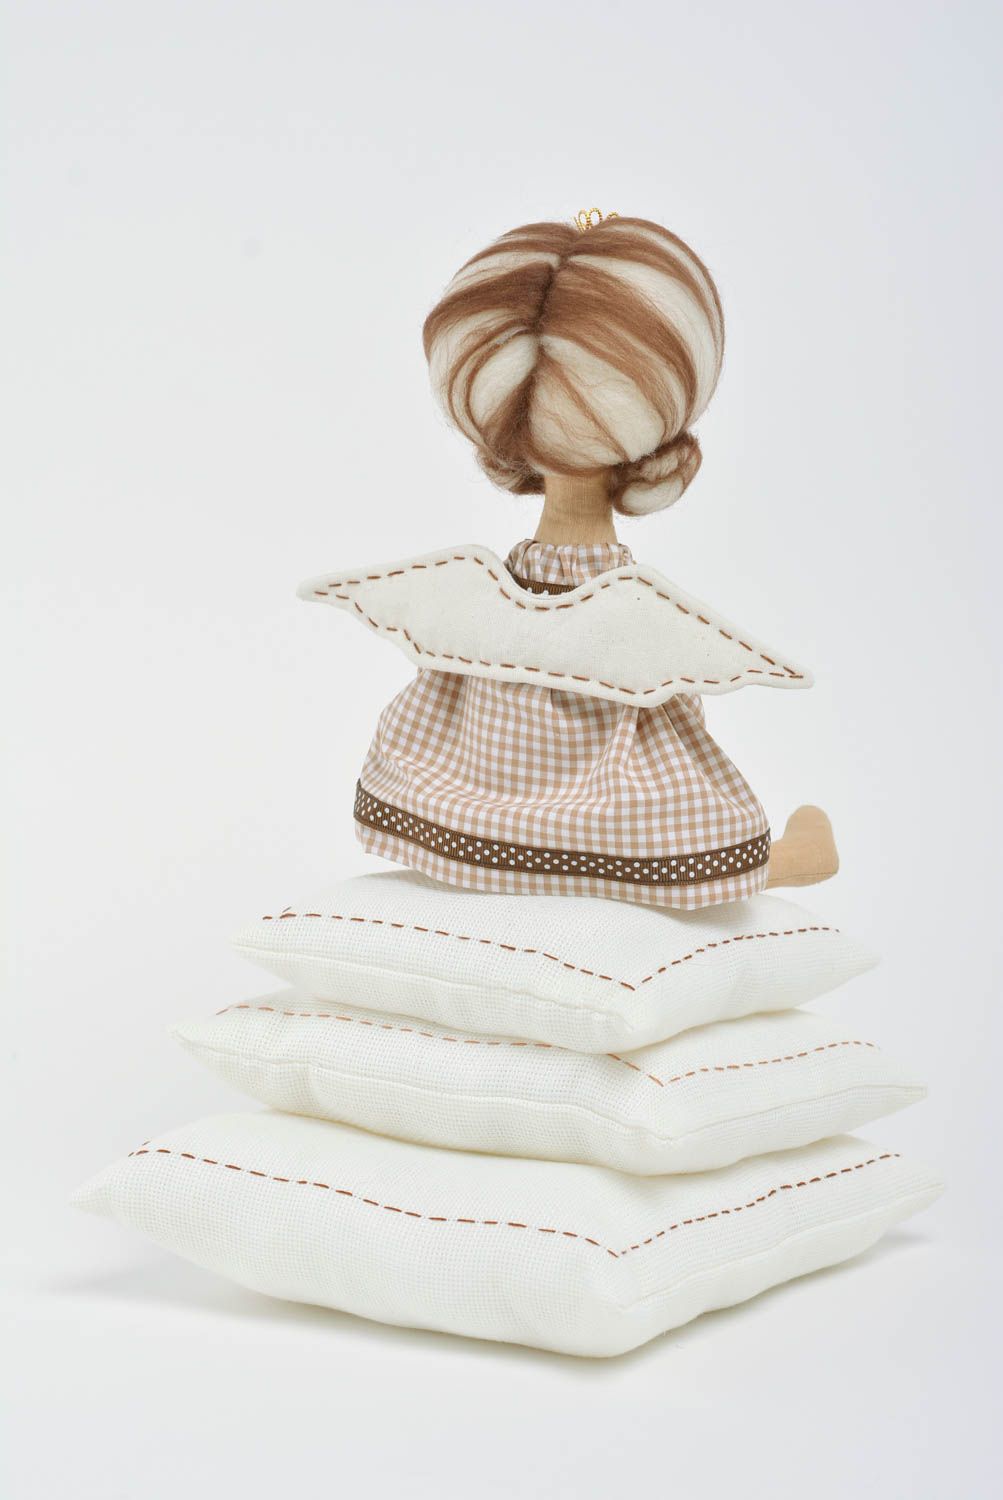 Мягкая игрушка ручной работы принцесса на горошине из льна и хлопка для декора фото 5